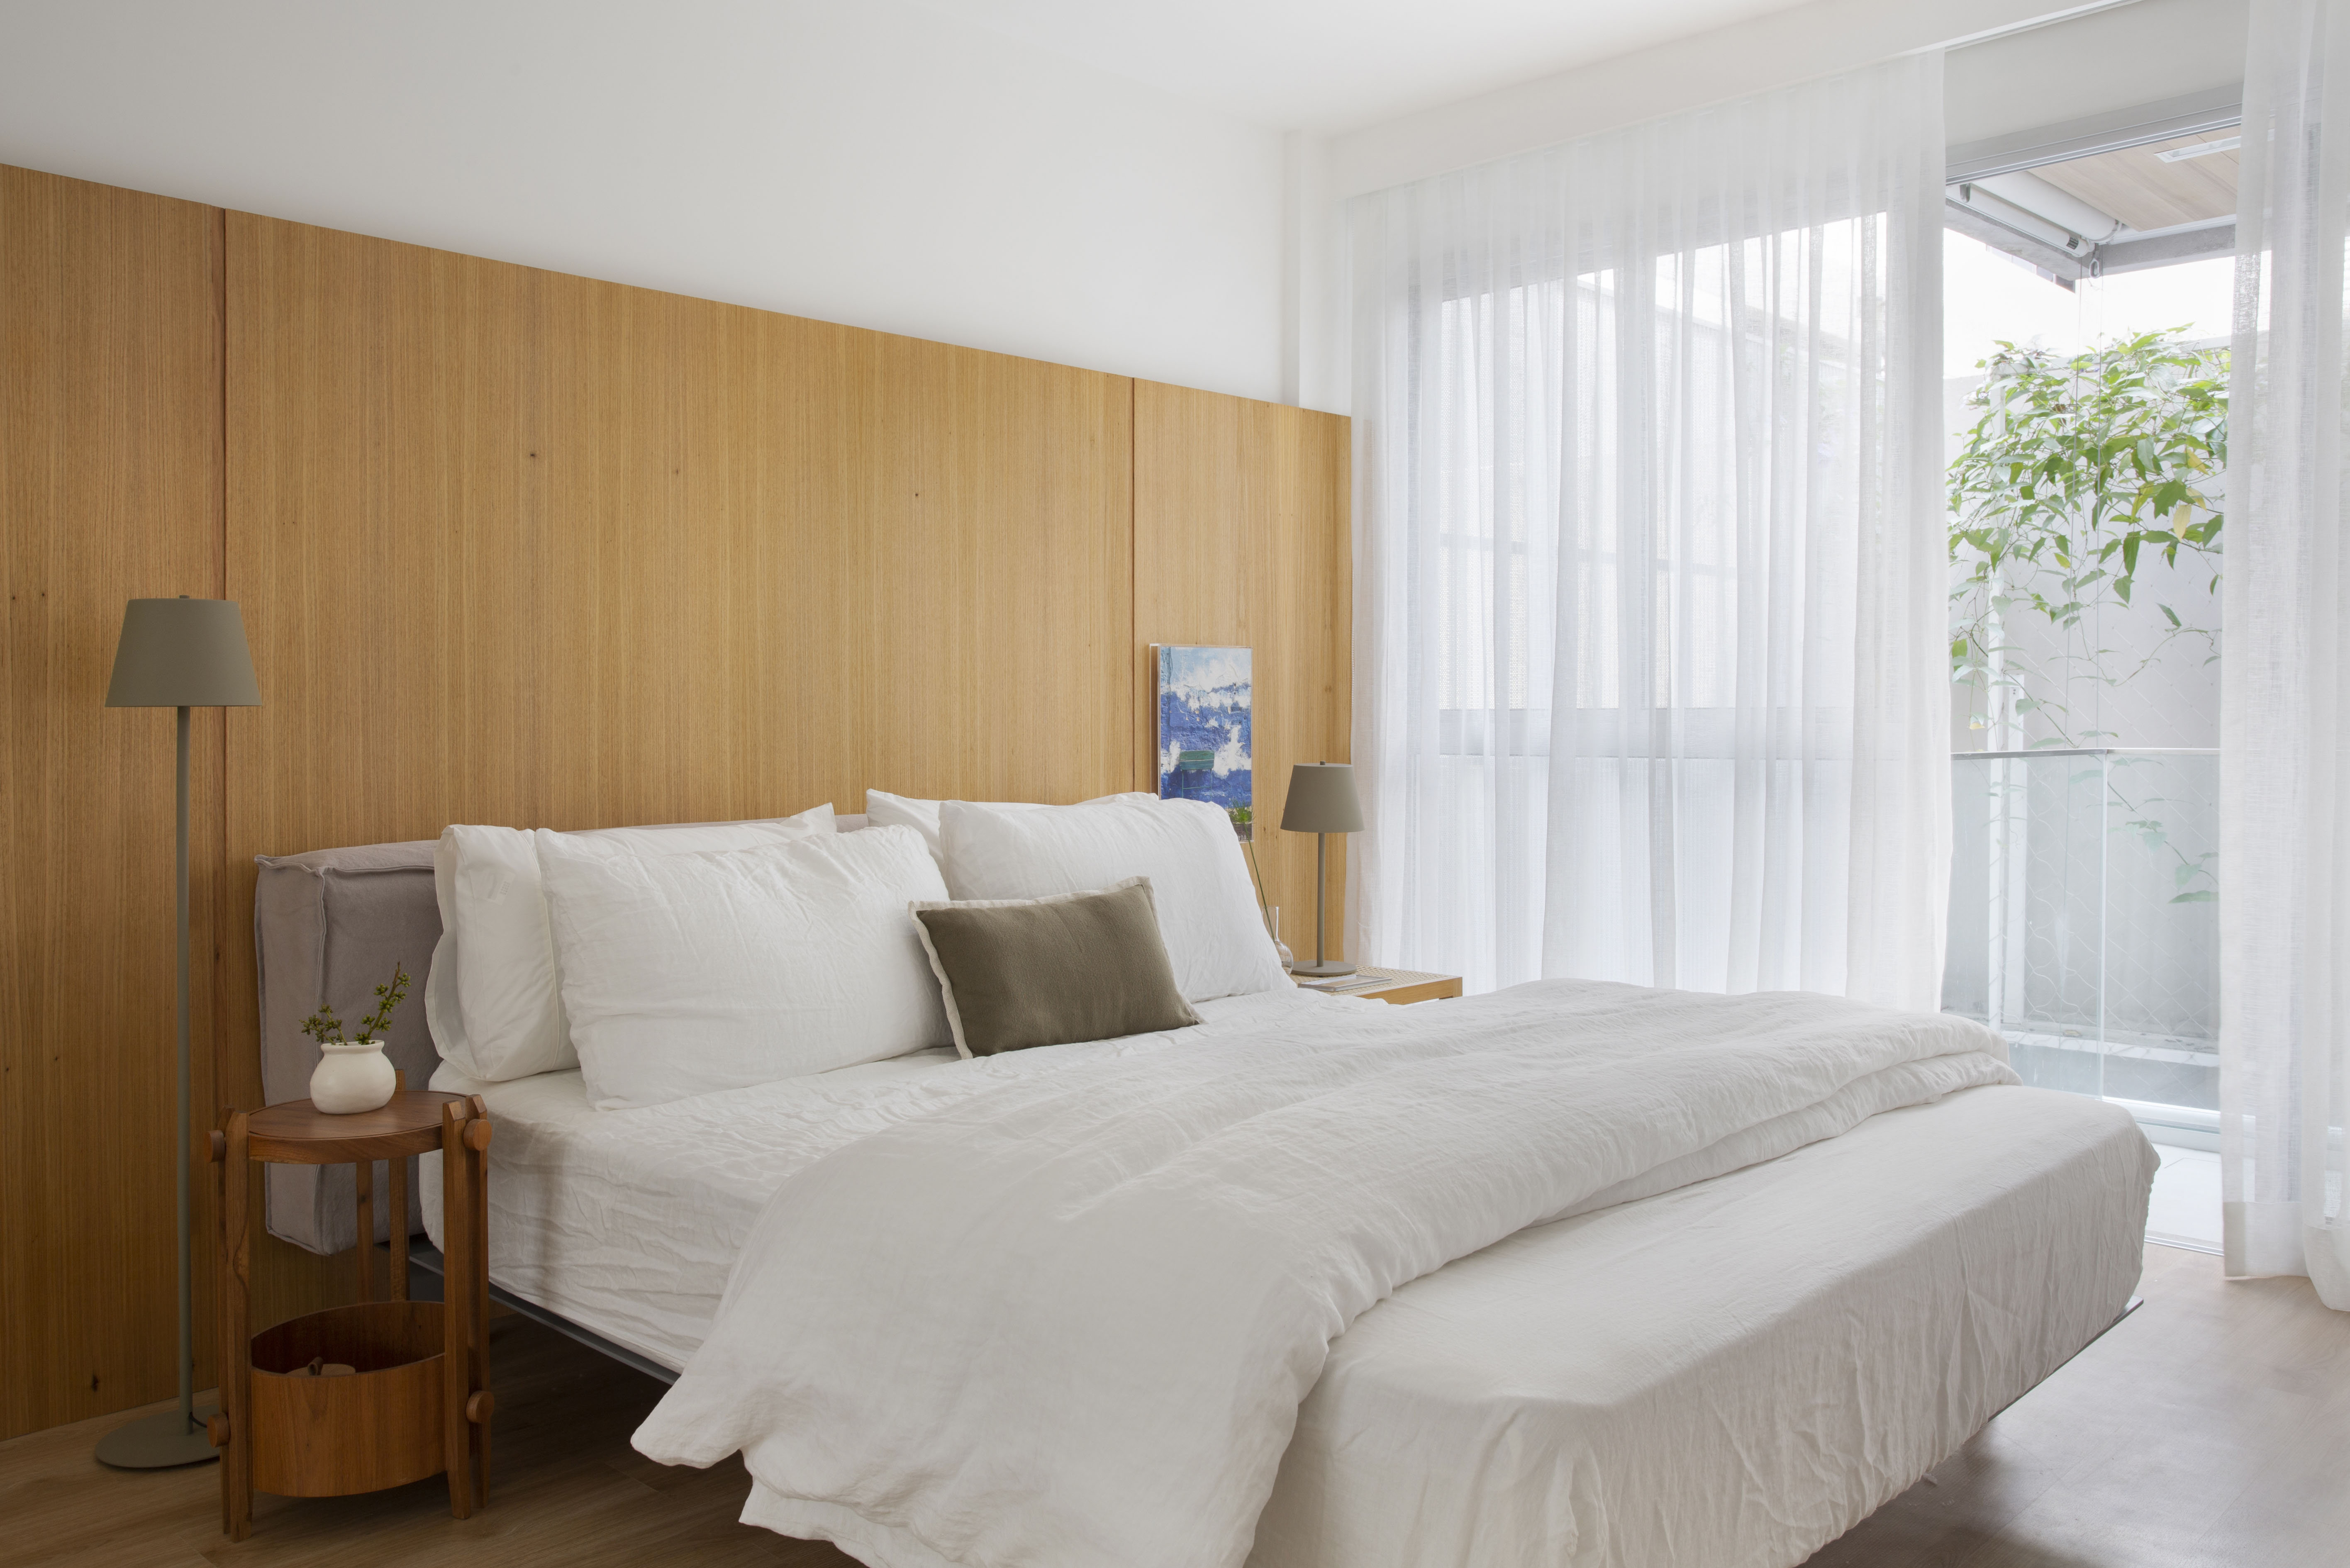 Quarto claro com cabeceira de madeira, cama de casal e cortina branca.